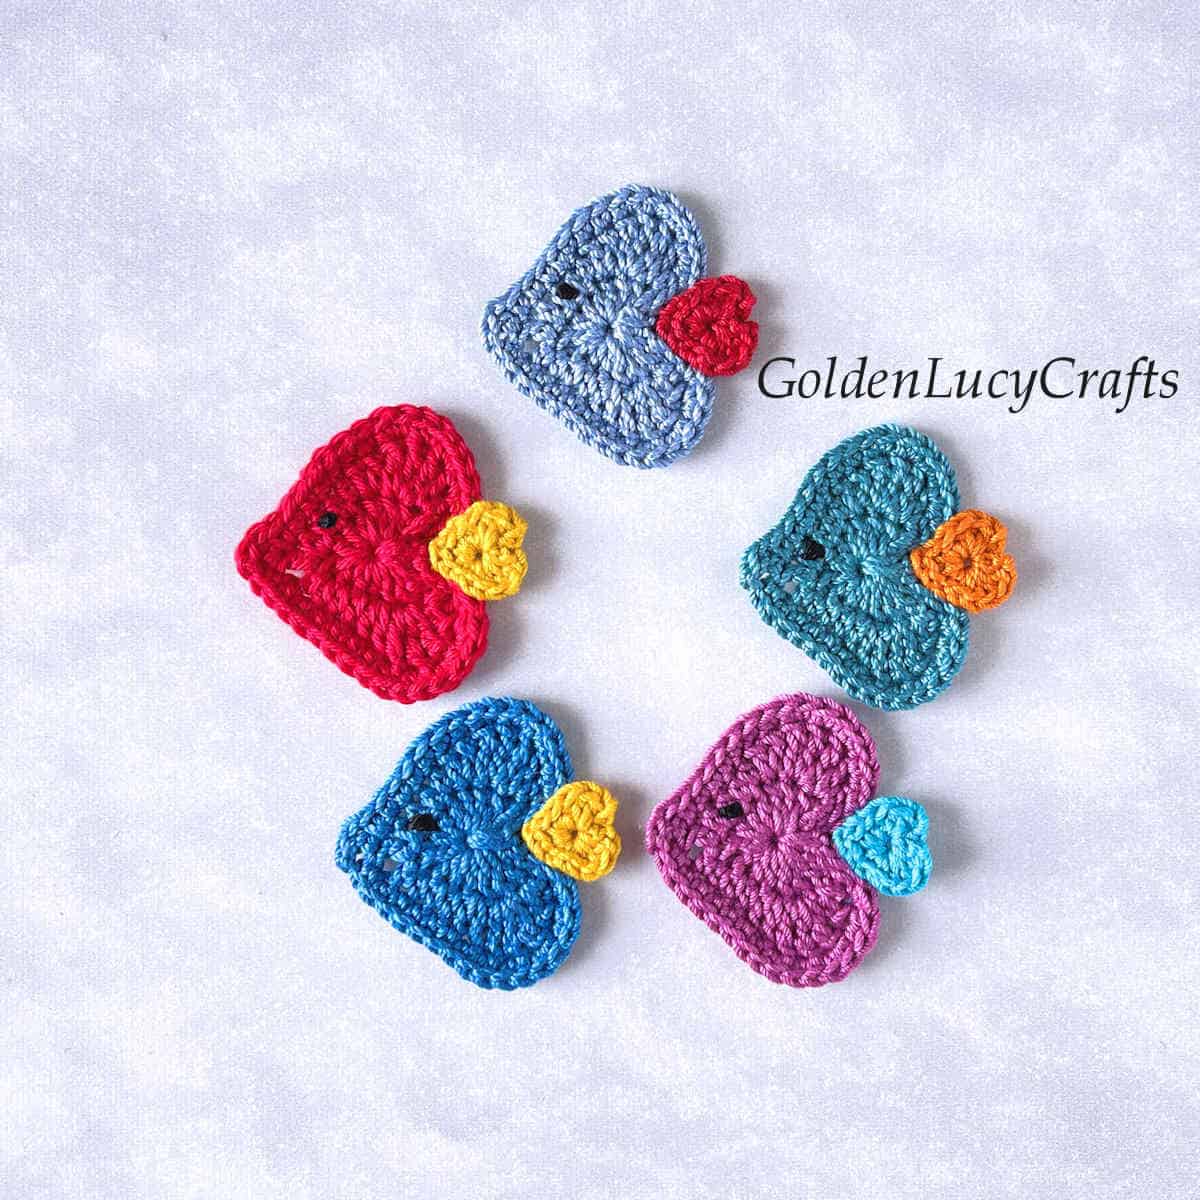 Five crochet fish appliques.